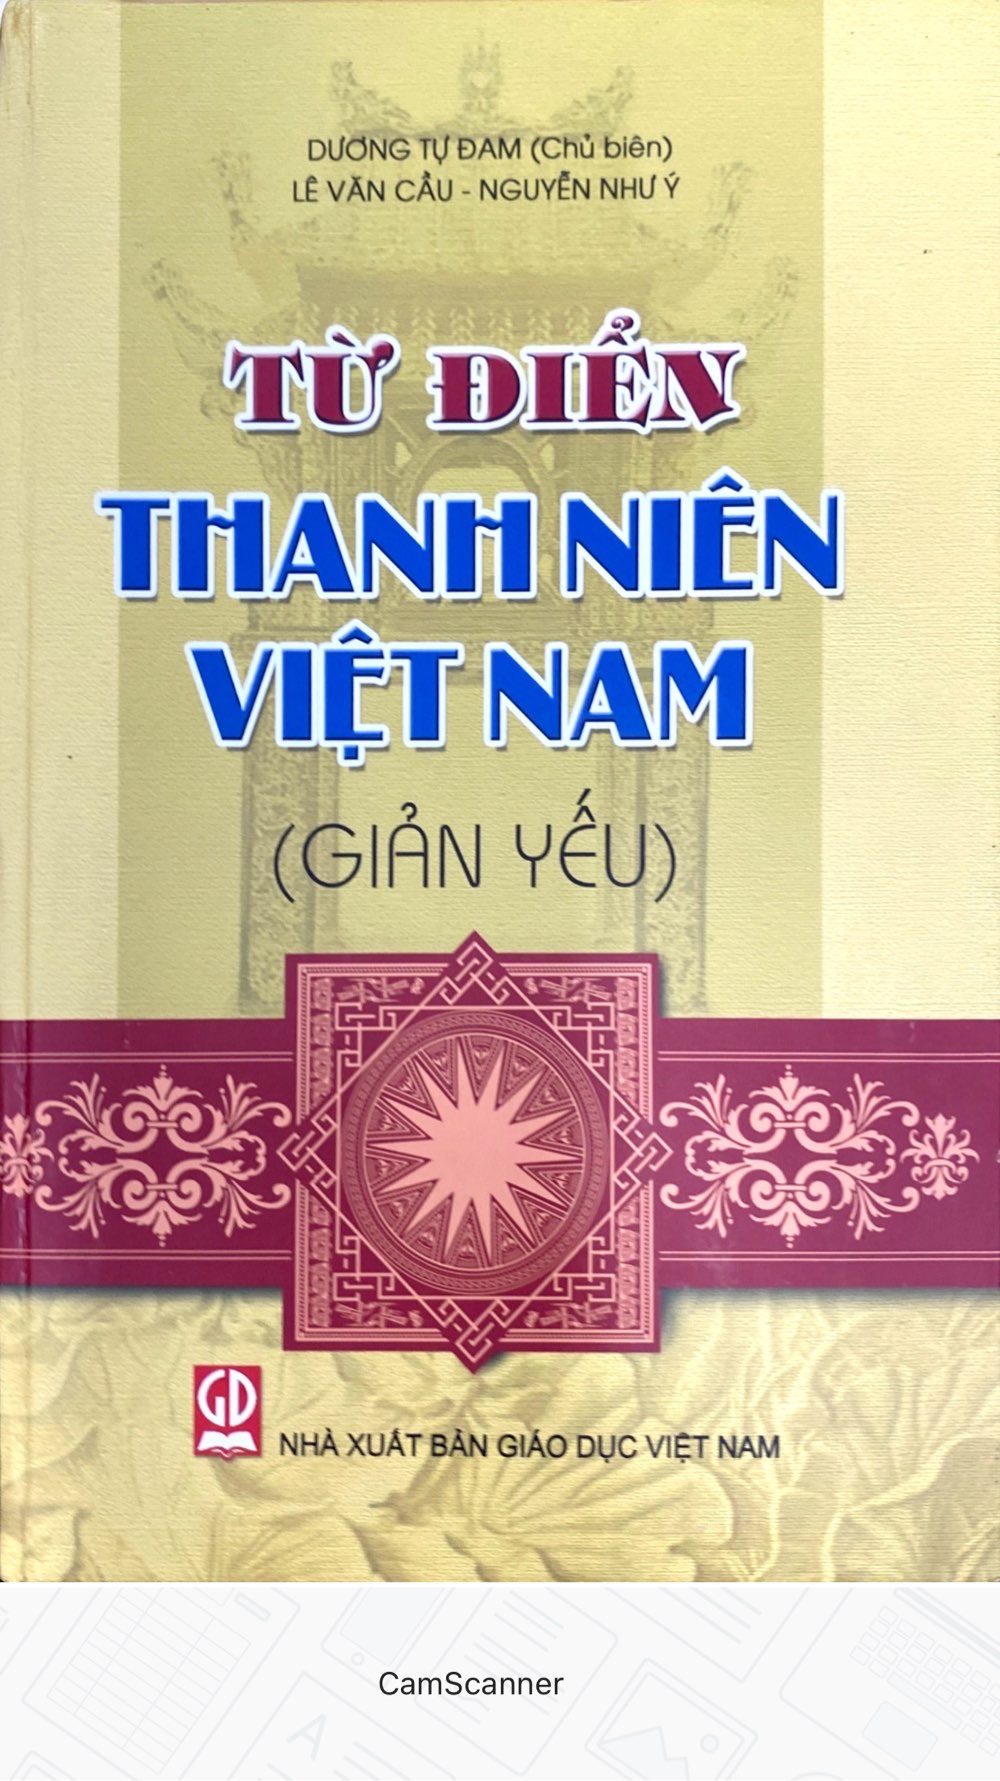 Từ Điển Thanh Niên Việt Nam - Giản Yếu